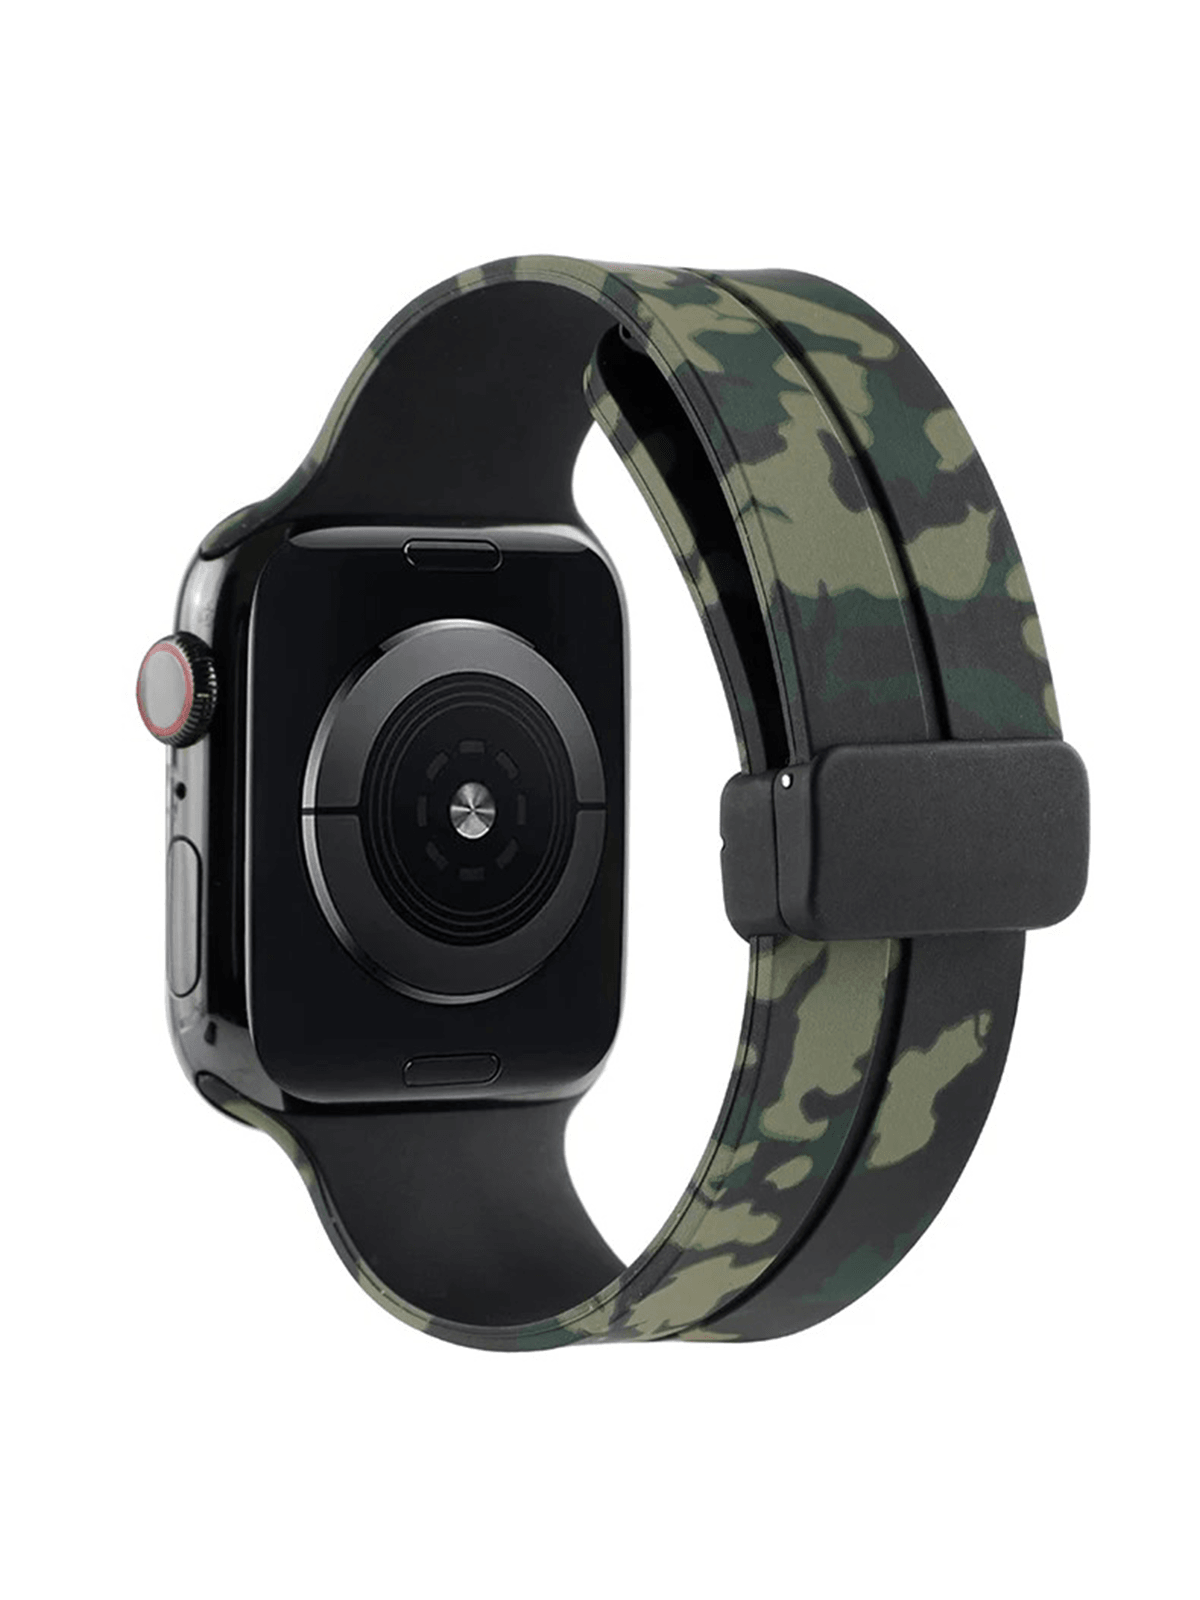 Apple Watch Tüm Modeller İle Uyumlu Kamuflaj Desen Ayarlanabilir Premium Kordon - YEŞİL